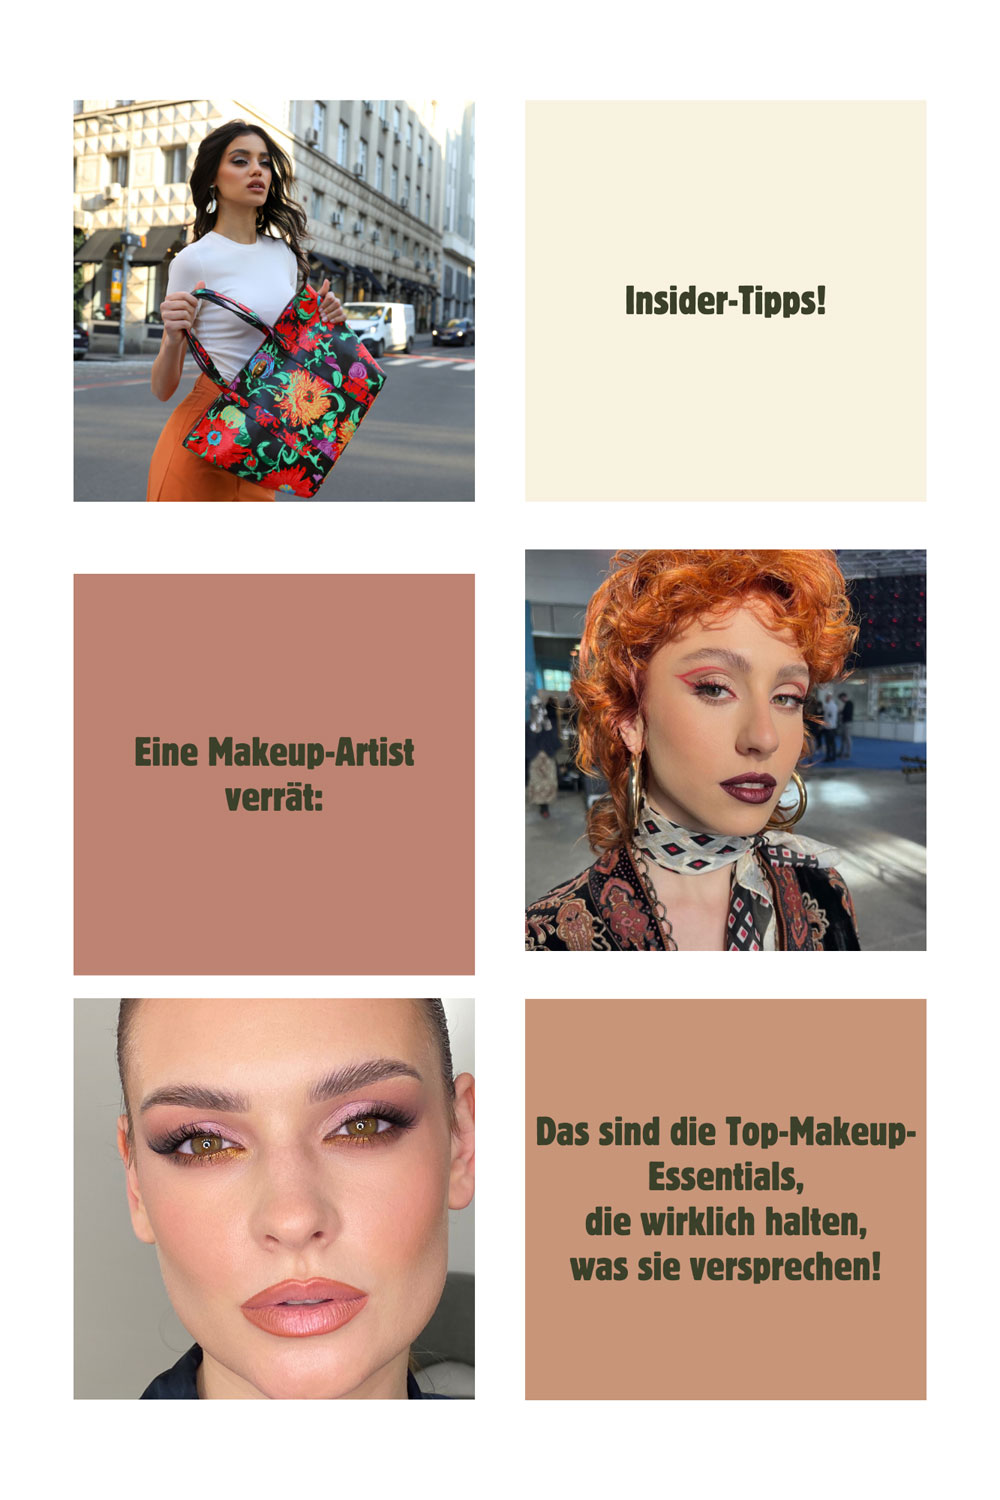 sonrisa kennt die Top-Produktfavoriten einer erfahrenen Makeup-Artist und weiss nun, was es für einen professionellen Makeup-Look braucht. 